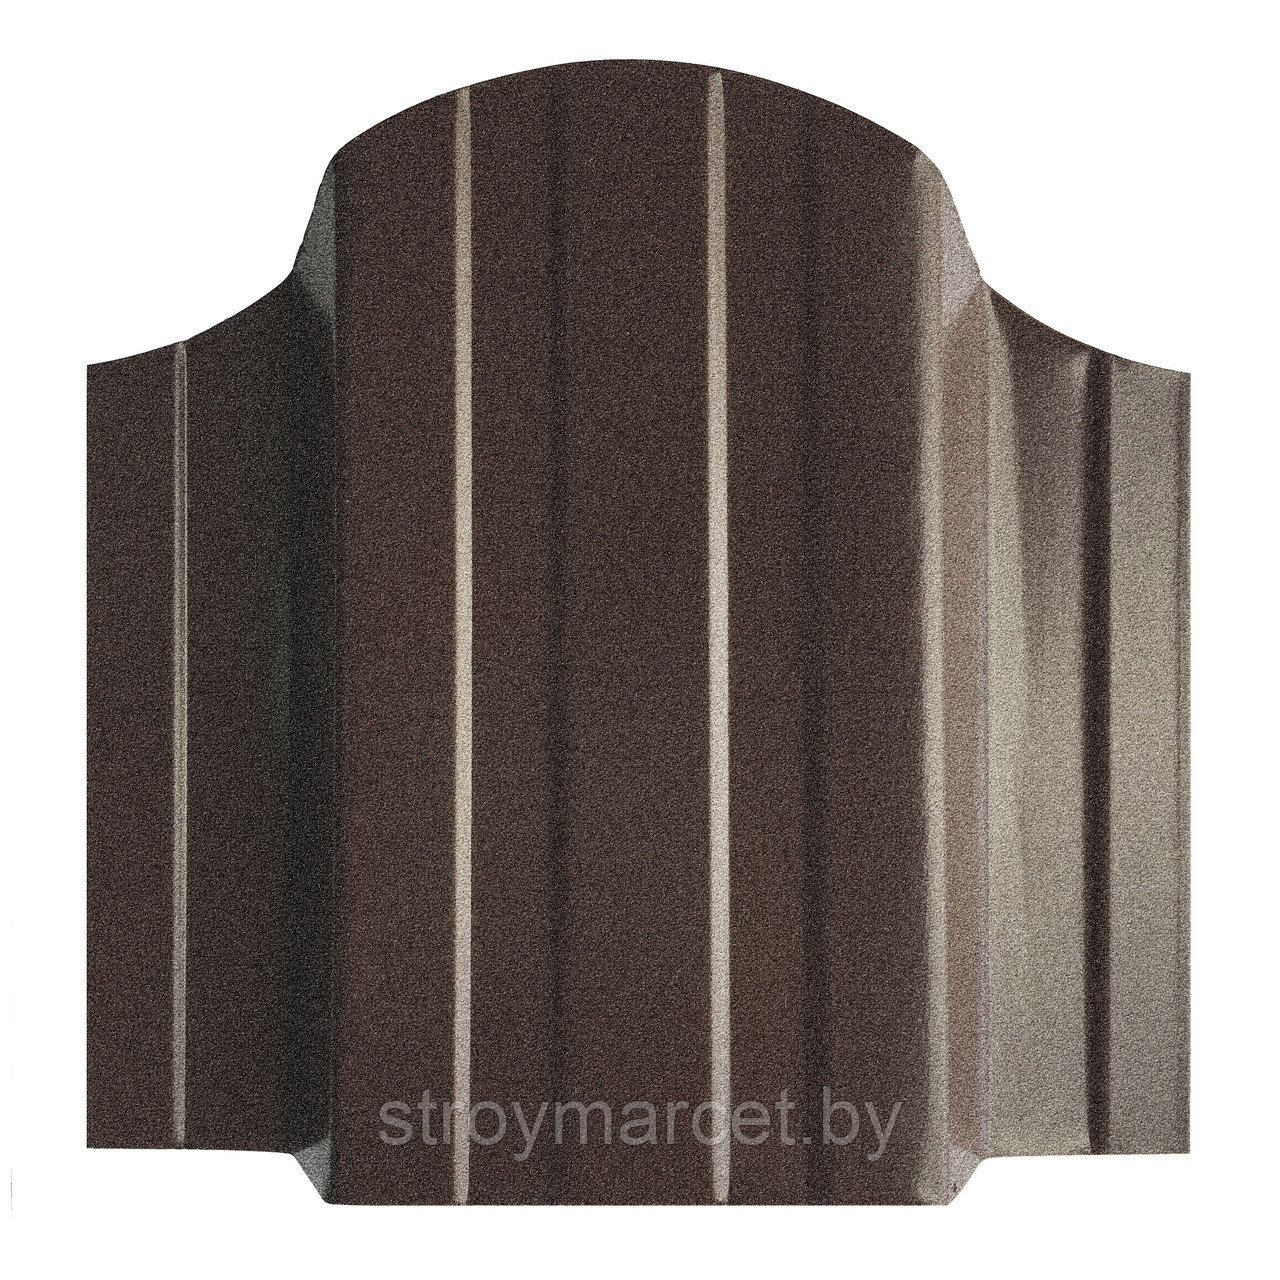 Евроштакетник "Шоколадно- коричневый 8017 Одностороннее покрытие